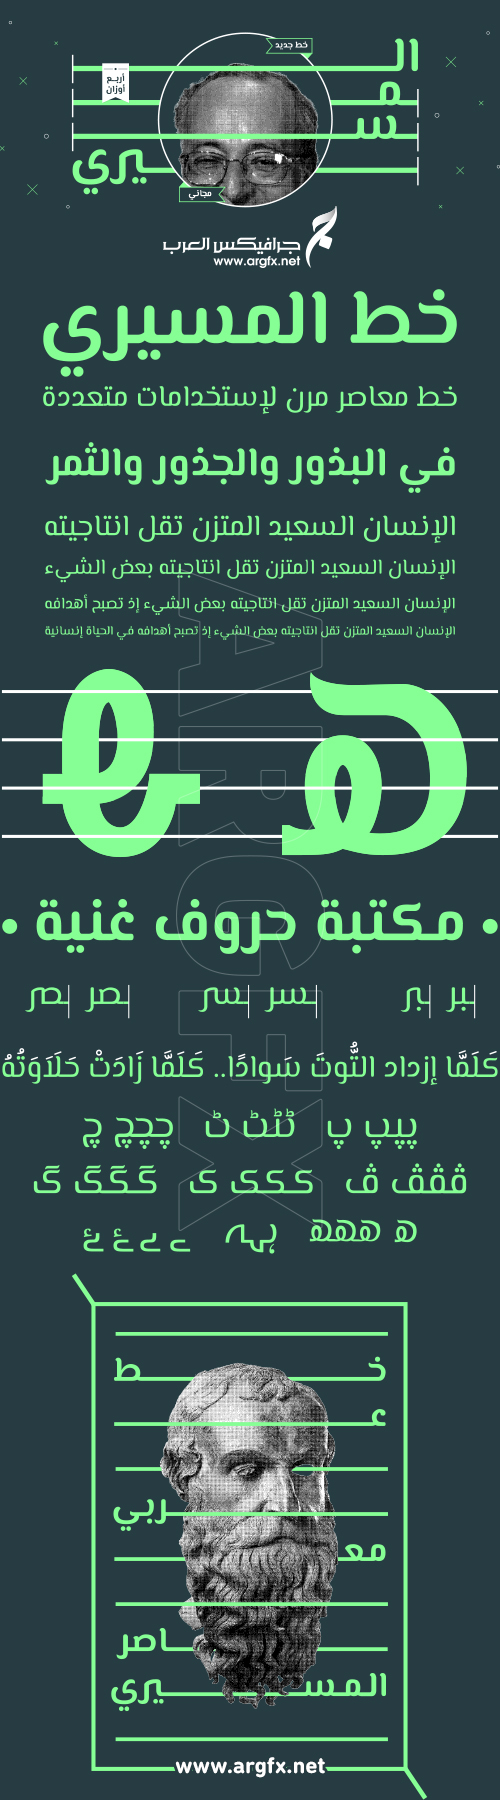 El Messiri Arabic Font Family